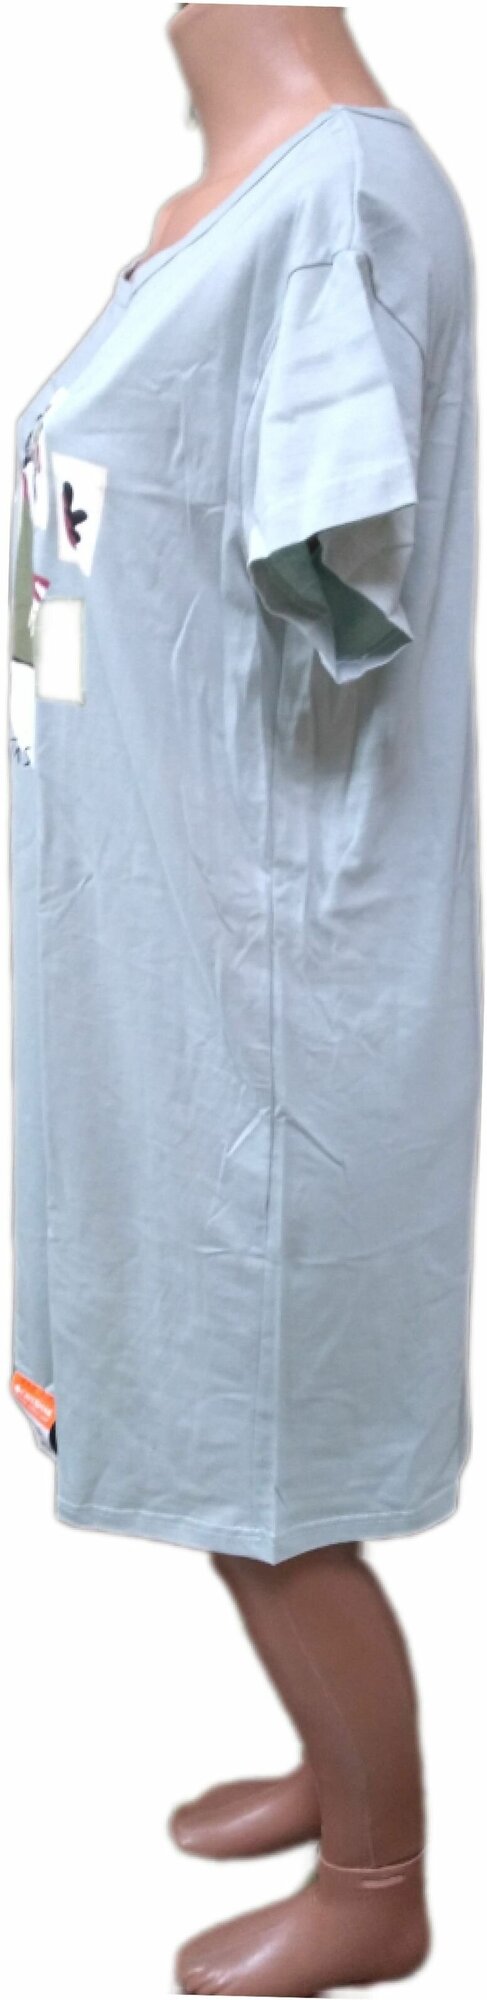 Сорочка Свiтанак средней длины, короткий рукав, трикотажная, размер 116, зеленый - фотография № 3